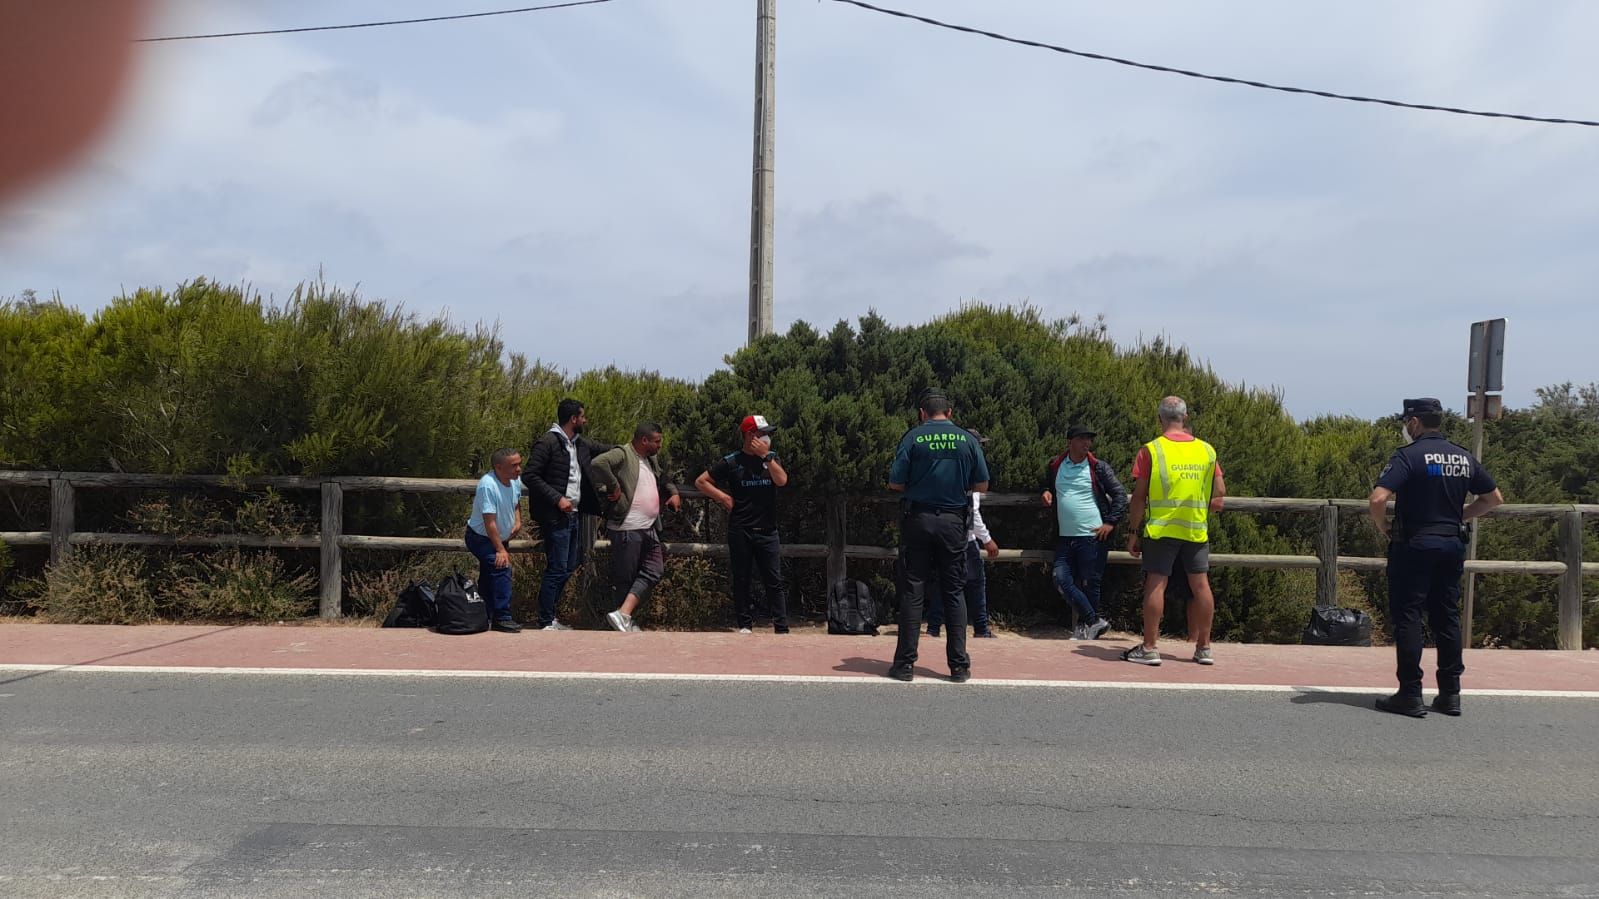 Llega una patera a Formentera con 27 migrantes a bordo